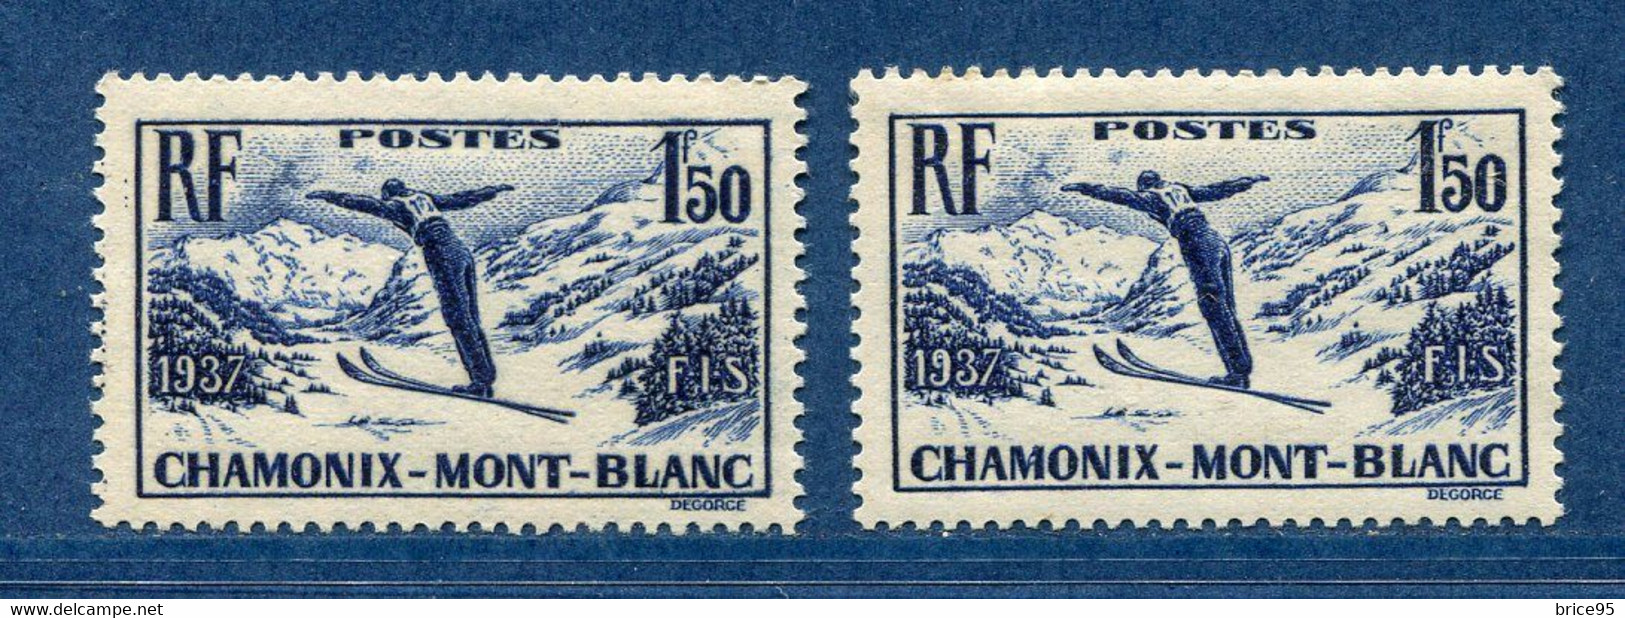 ⭐ France - Variété - YT N° 334 - Couleurs - Papier Jaunatre - Neuf Sans Charnière - 1937 ⭐ - Nuovi